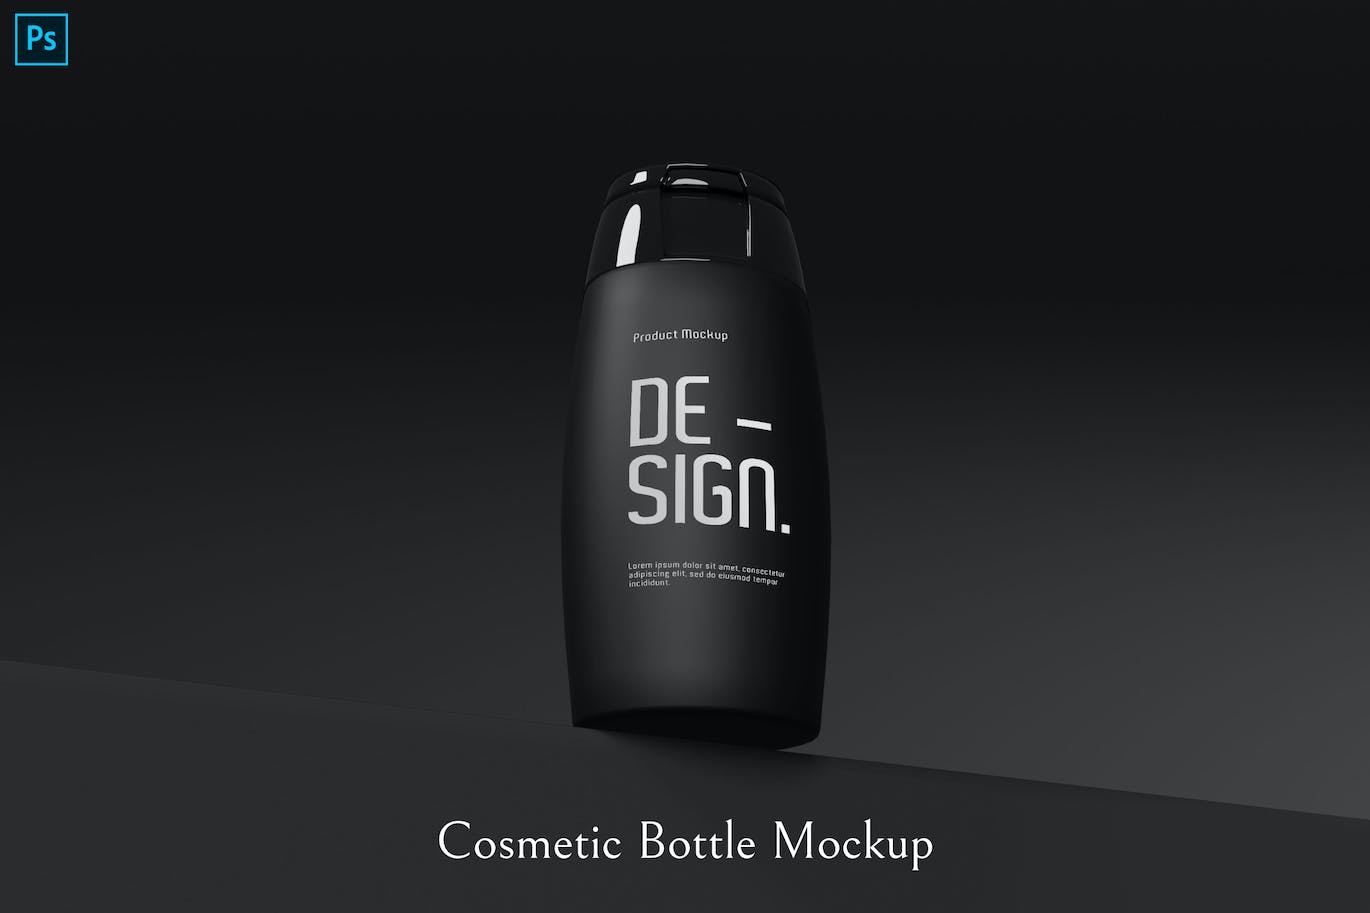 化妆品瓶子包装设计样机 cosmetic bottle mockup 样机素材 第1张